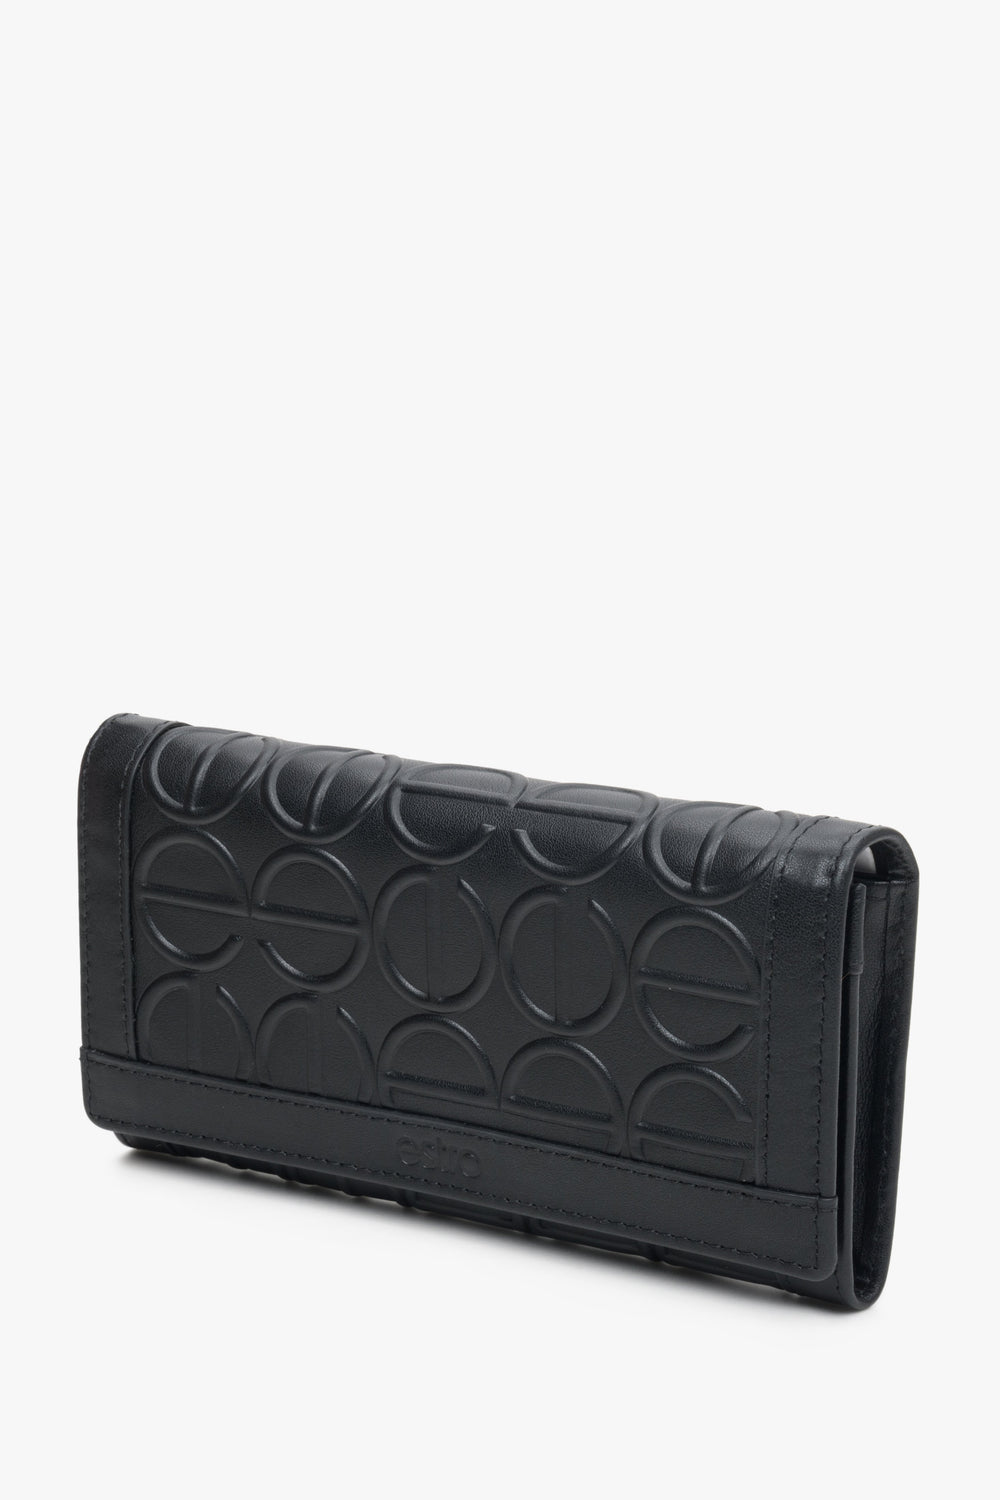 Duży, skórzany portfel damski czarny marki Estro.